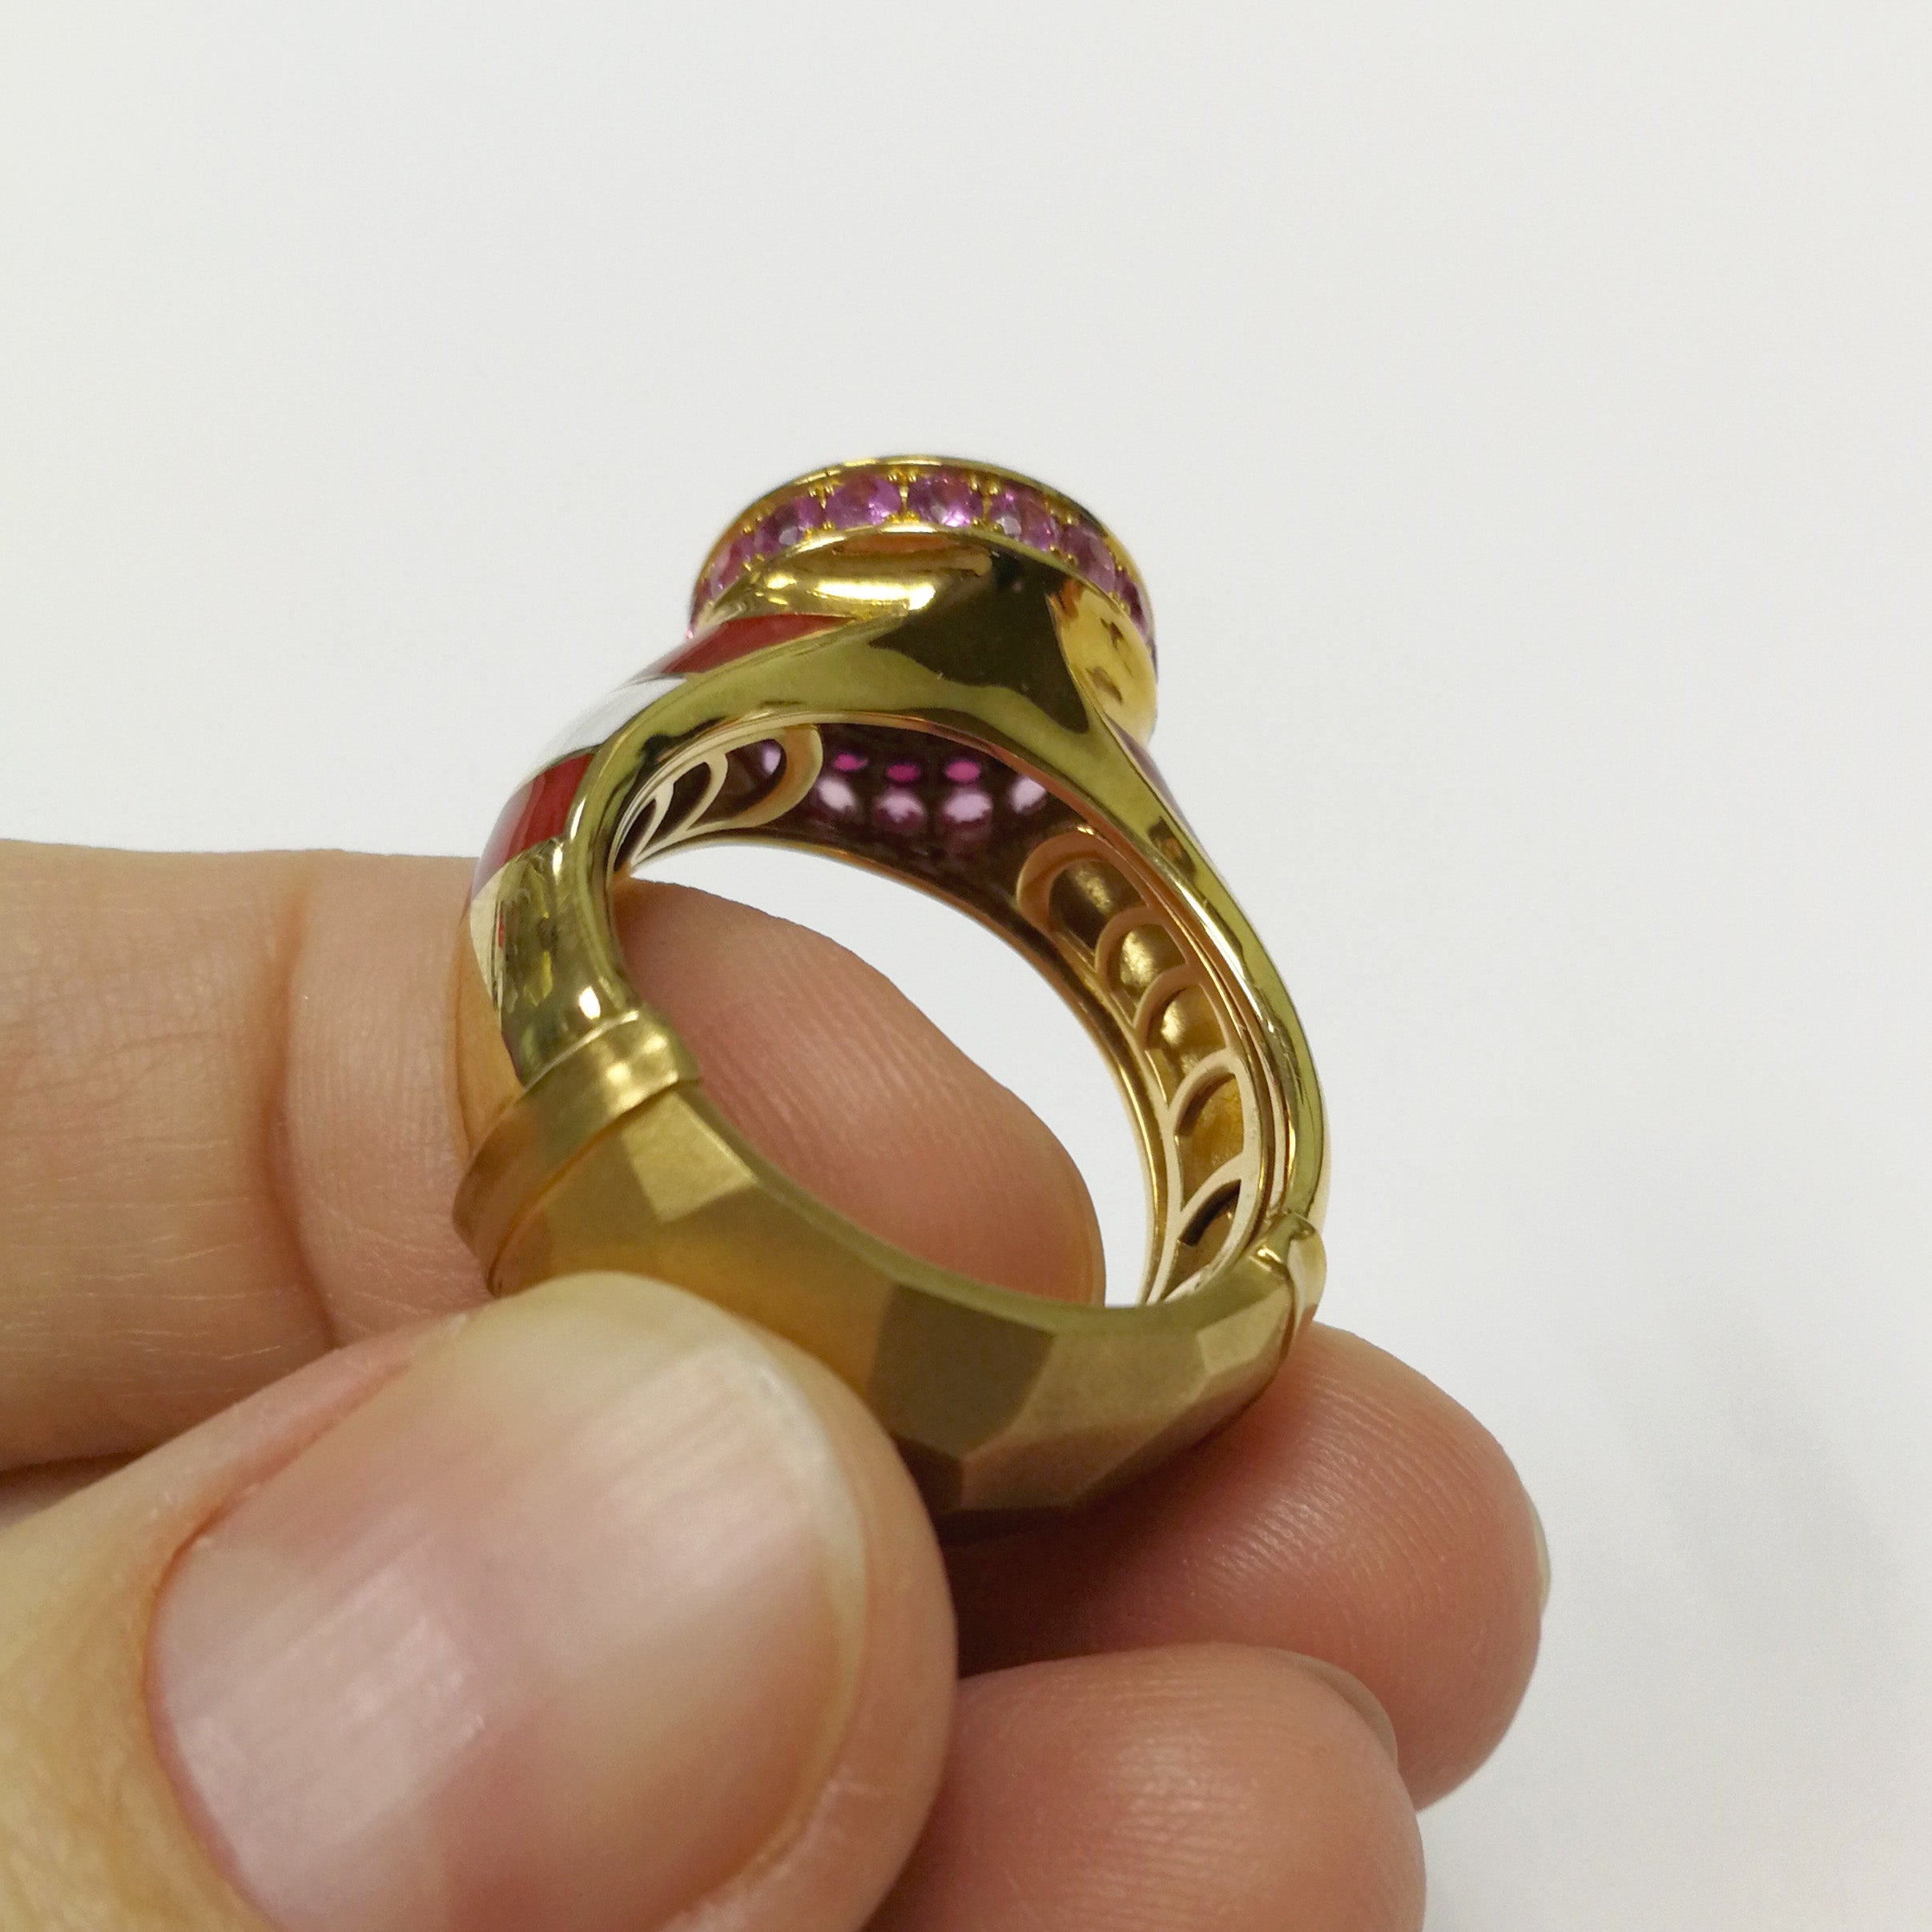 R 0295-0, 18K Yellow Gold, Pink Tourmaline, Pink Sapphires, Enamel Ring